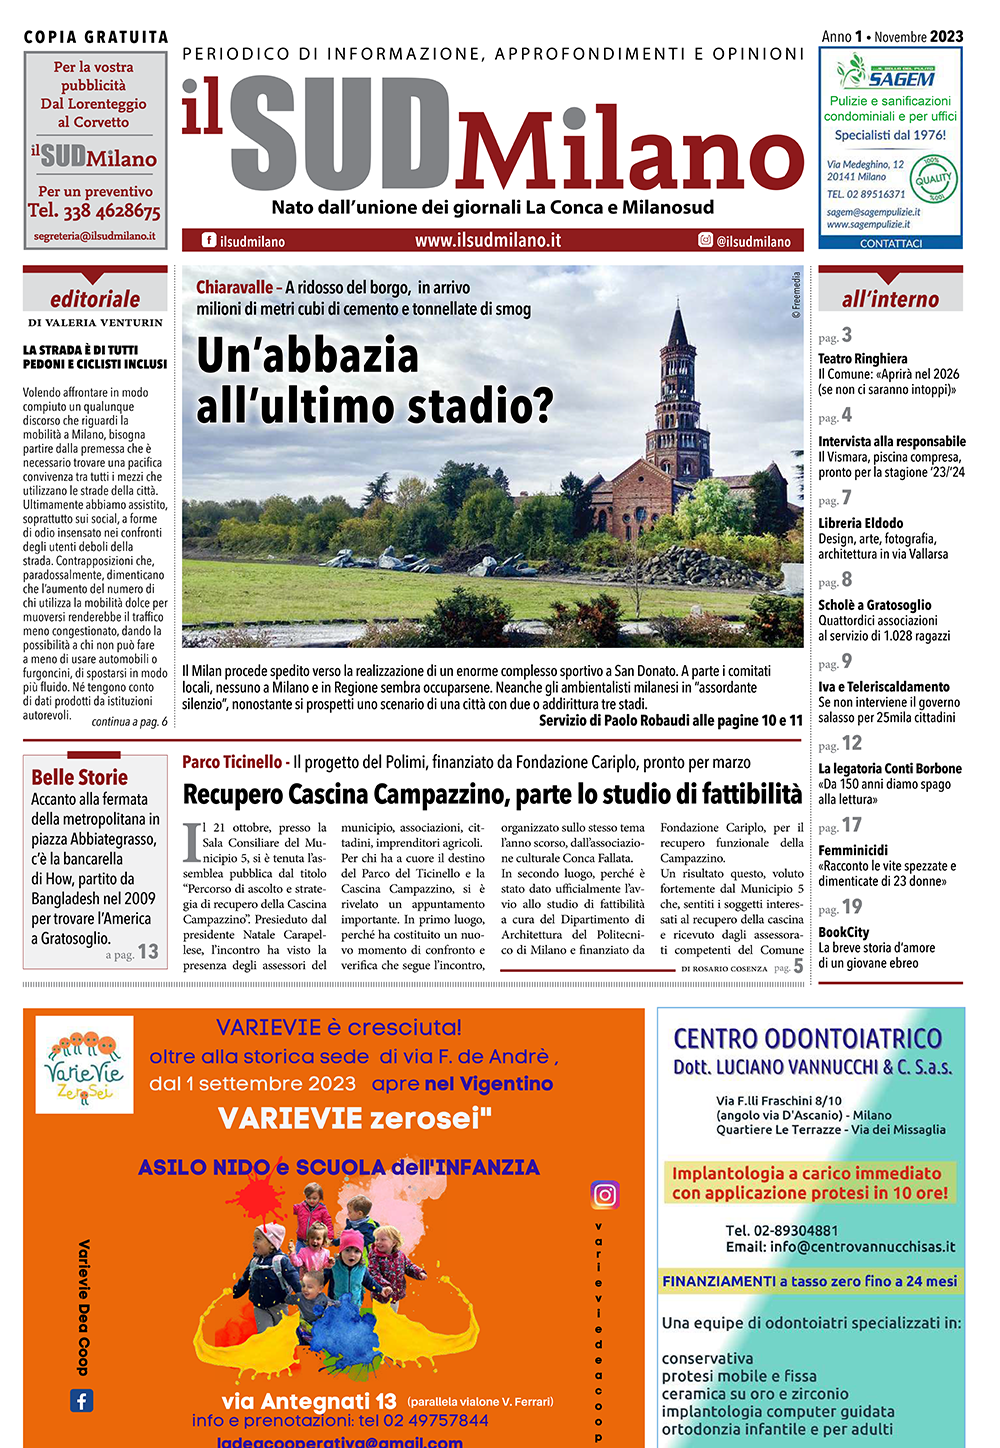 Prima pagina del giornale il SUD Milano di novembre 2023